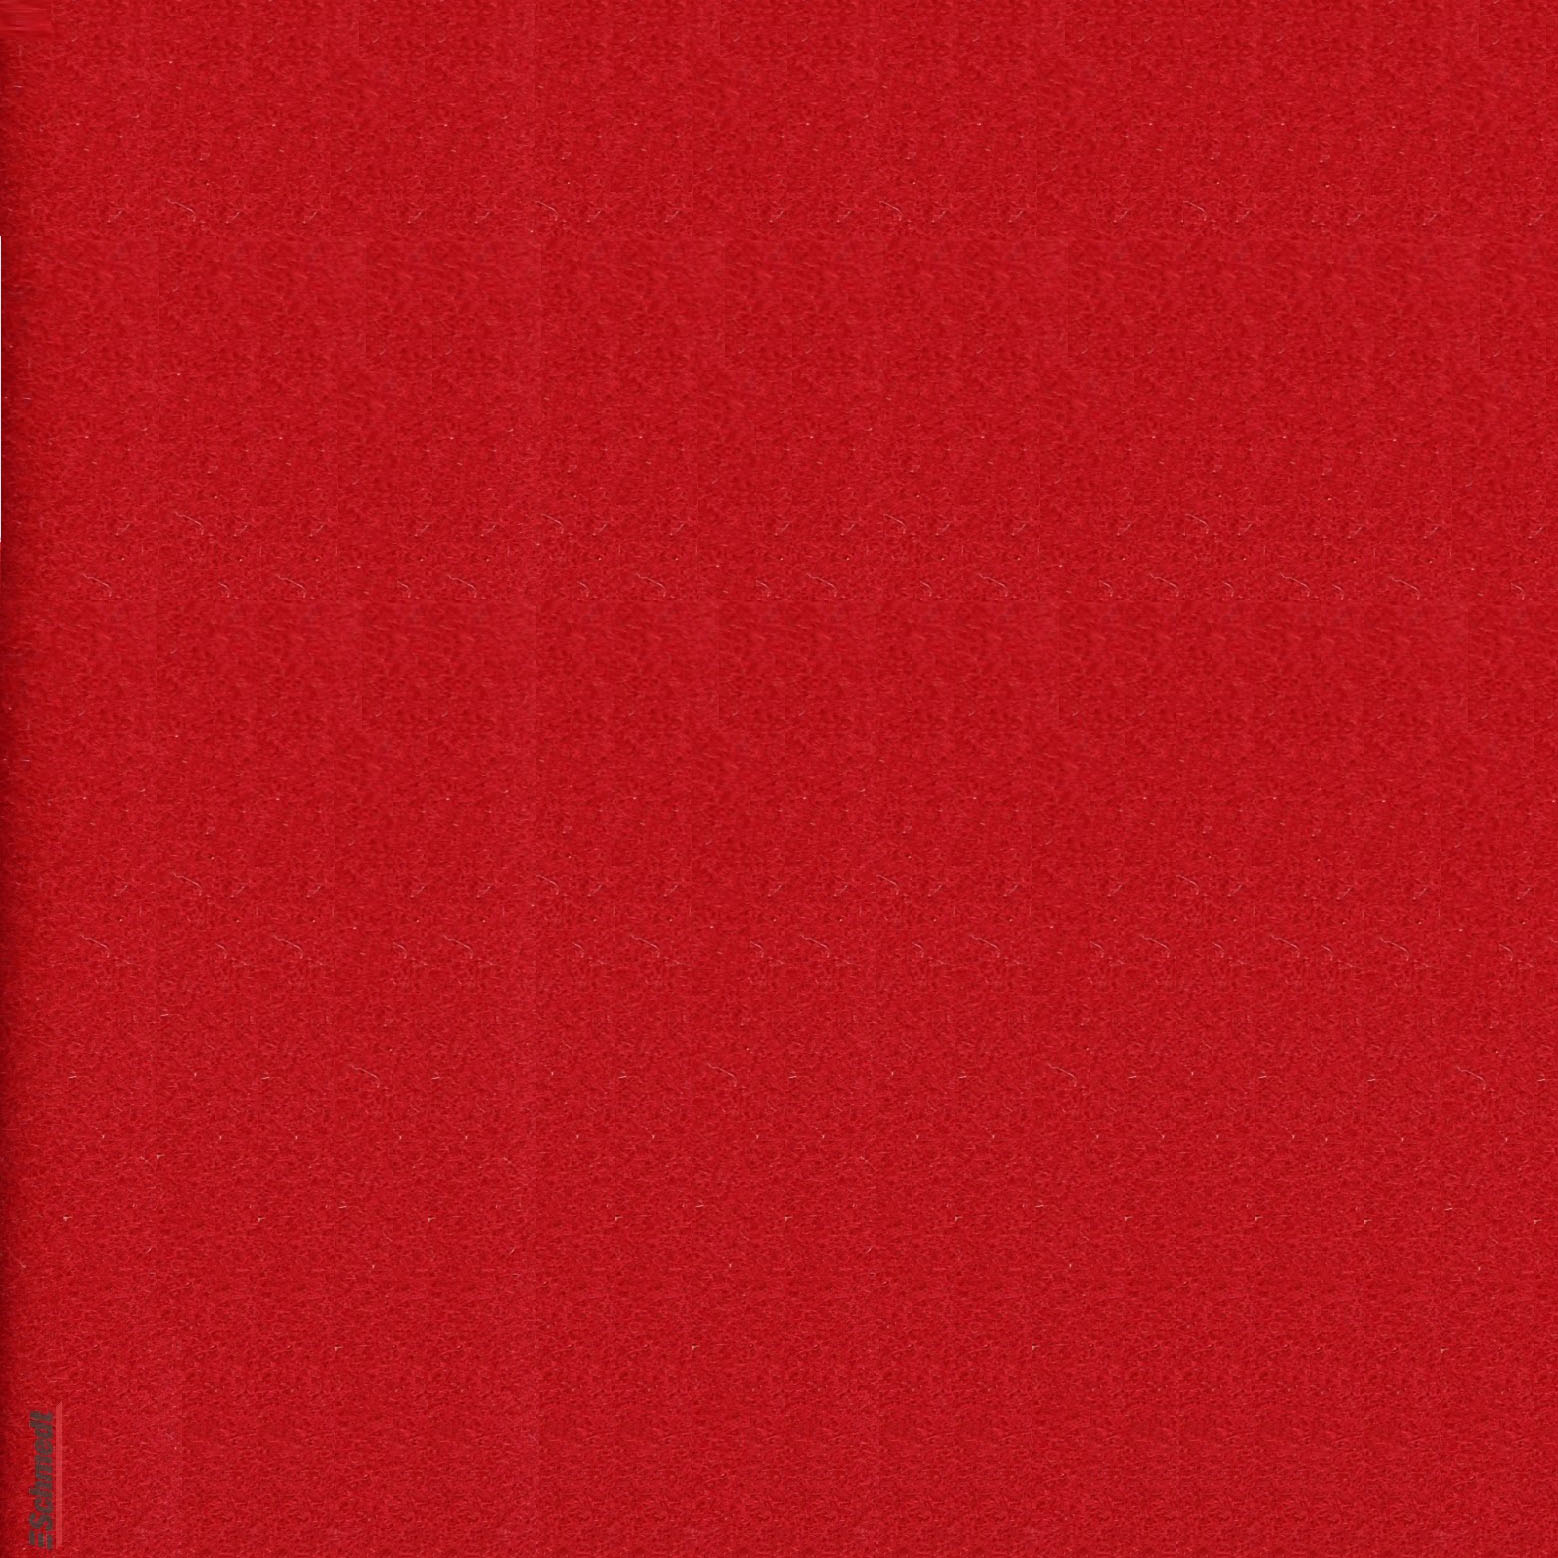 Papier à velours - Couleur 299 - rouge clair - papier de couverture pour livres, boîtes, comme doublure pour boîtes et l'emboîtages, pour cr...